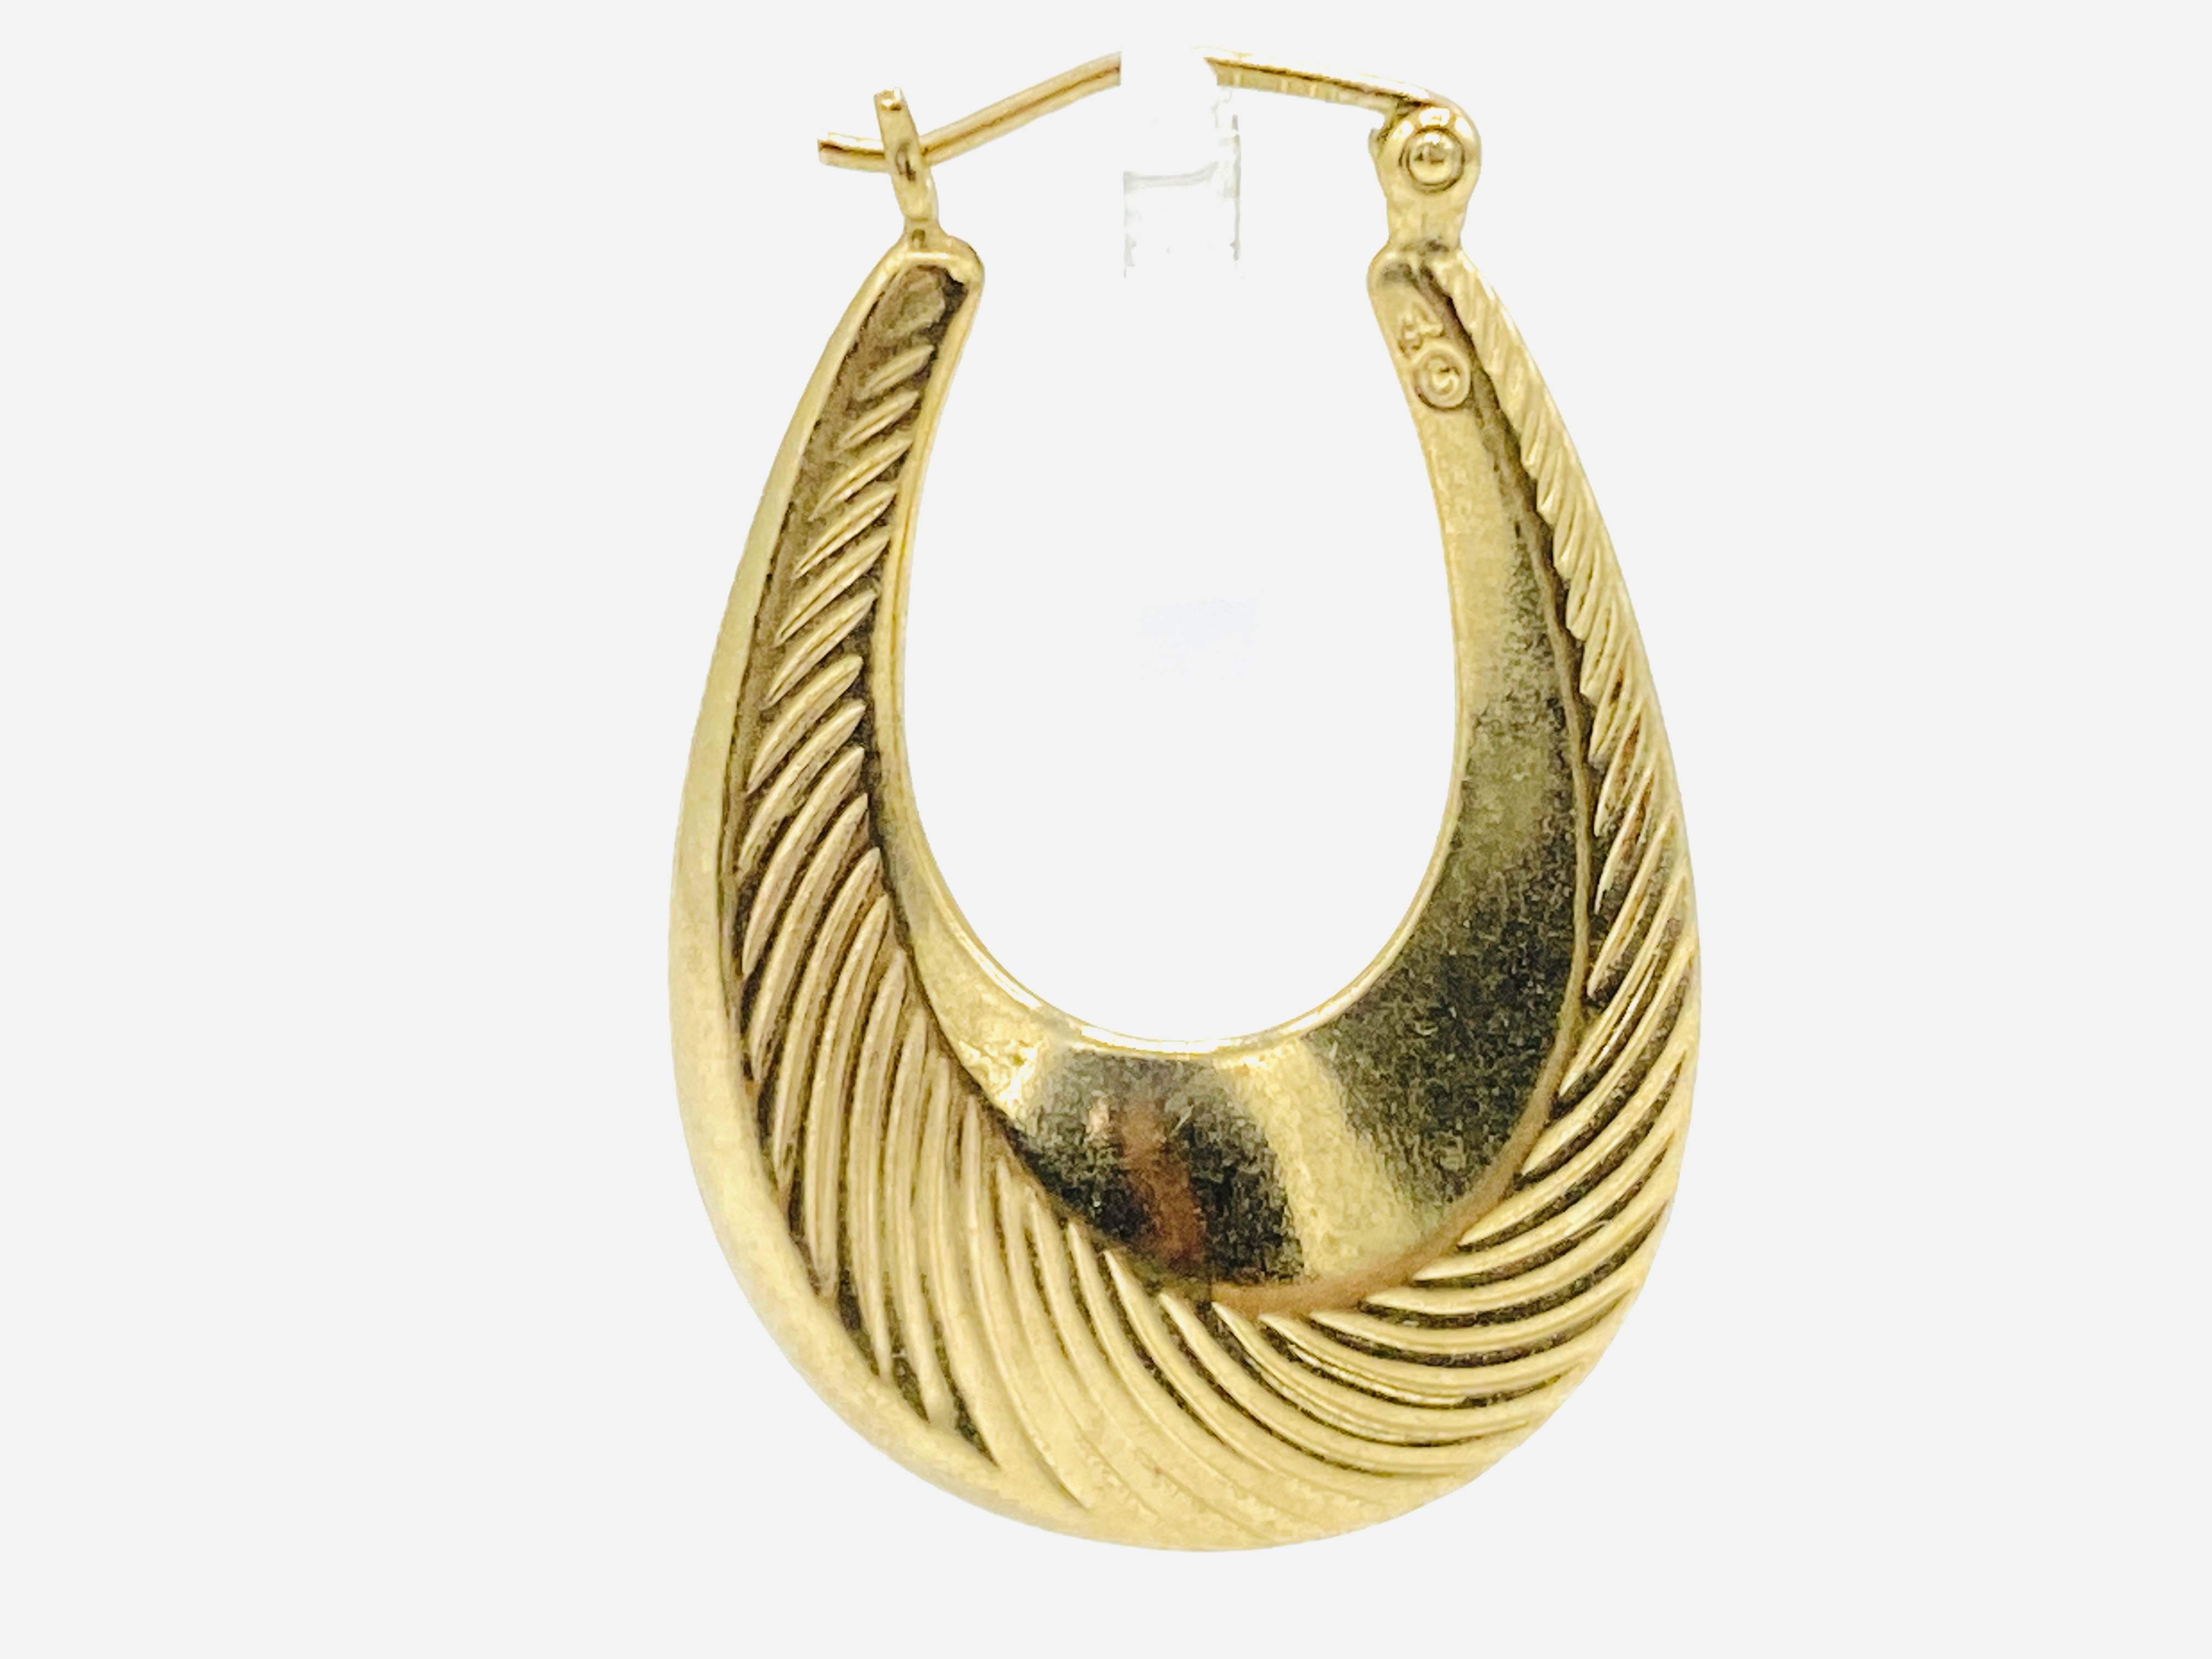 Pair of 9ct gold loop earrings - Image 2 of 3